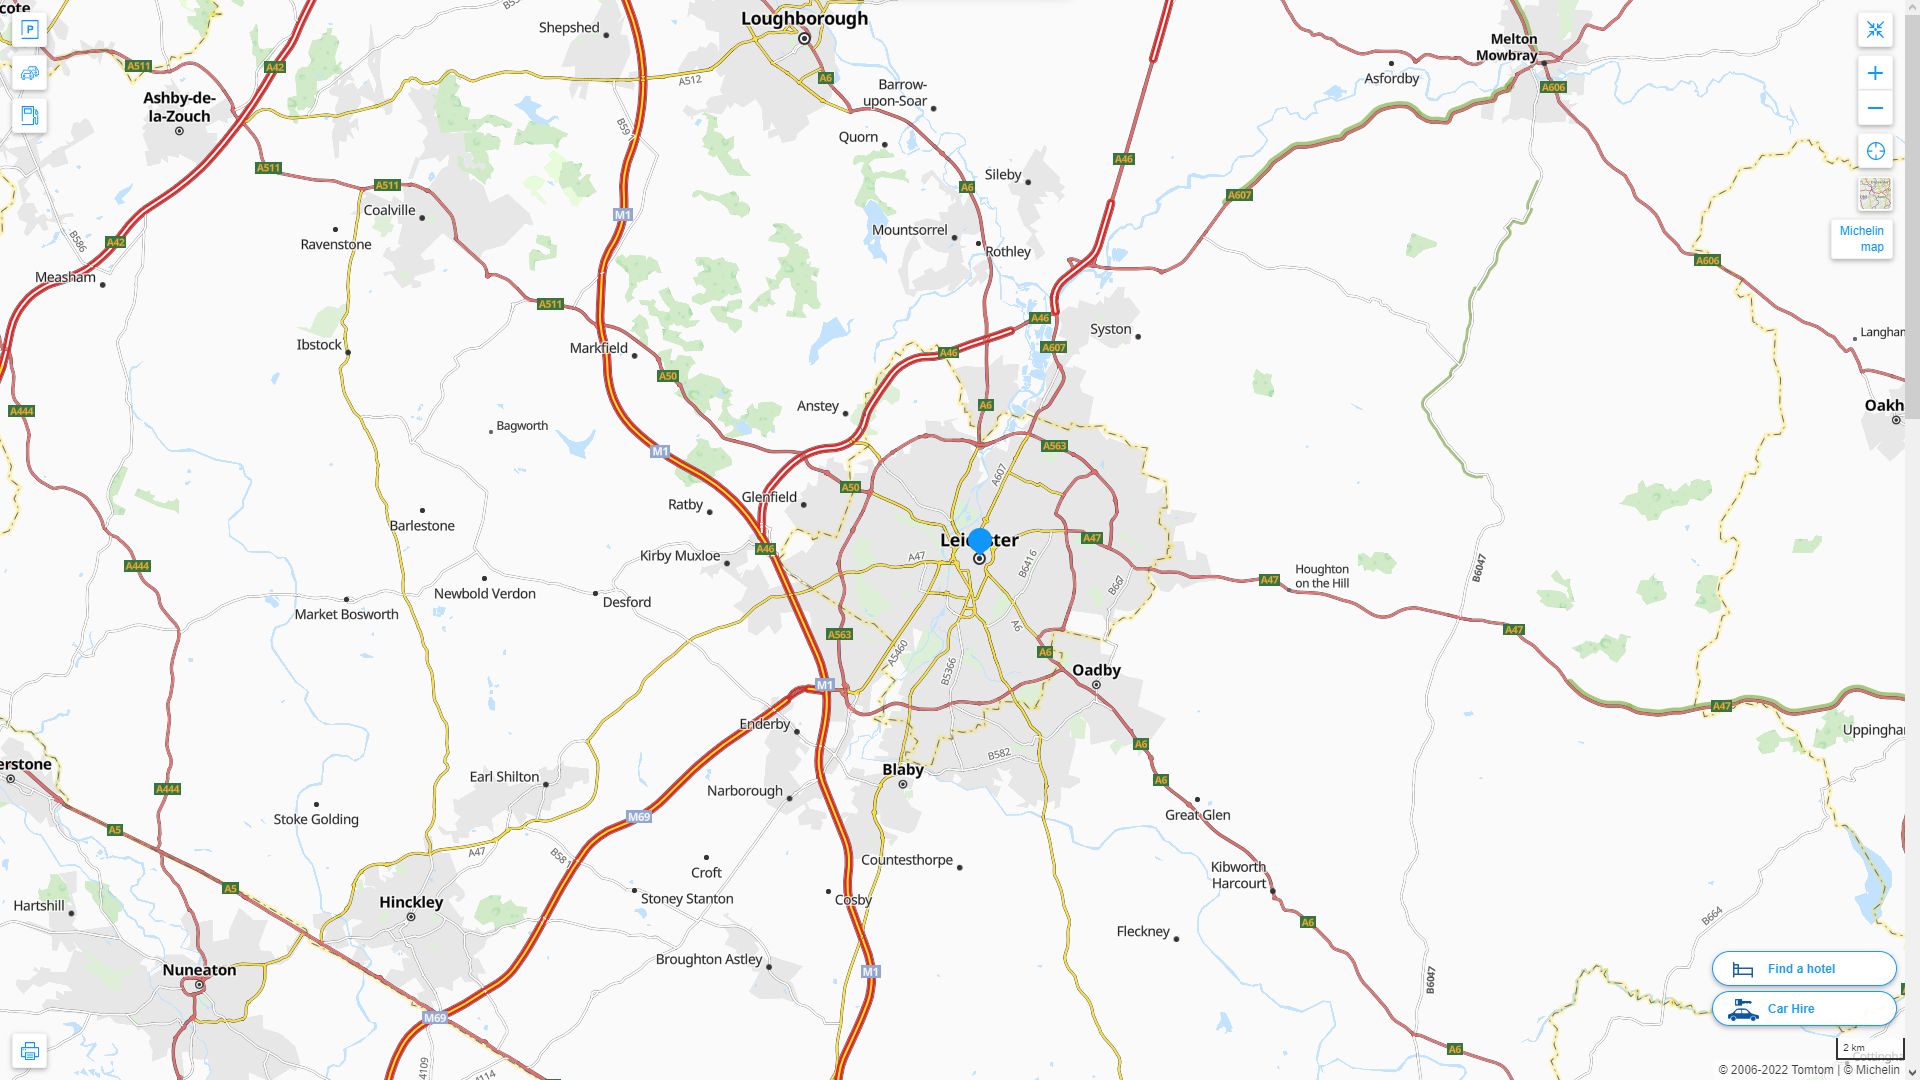 Leicester Royaume Uni Autoroute et carte routiere